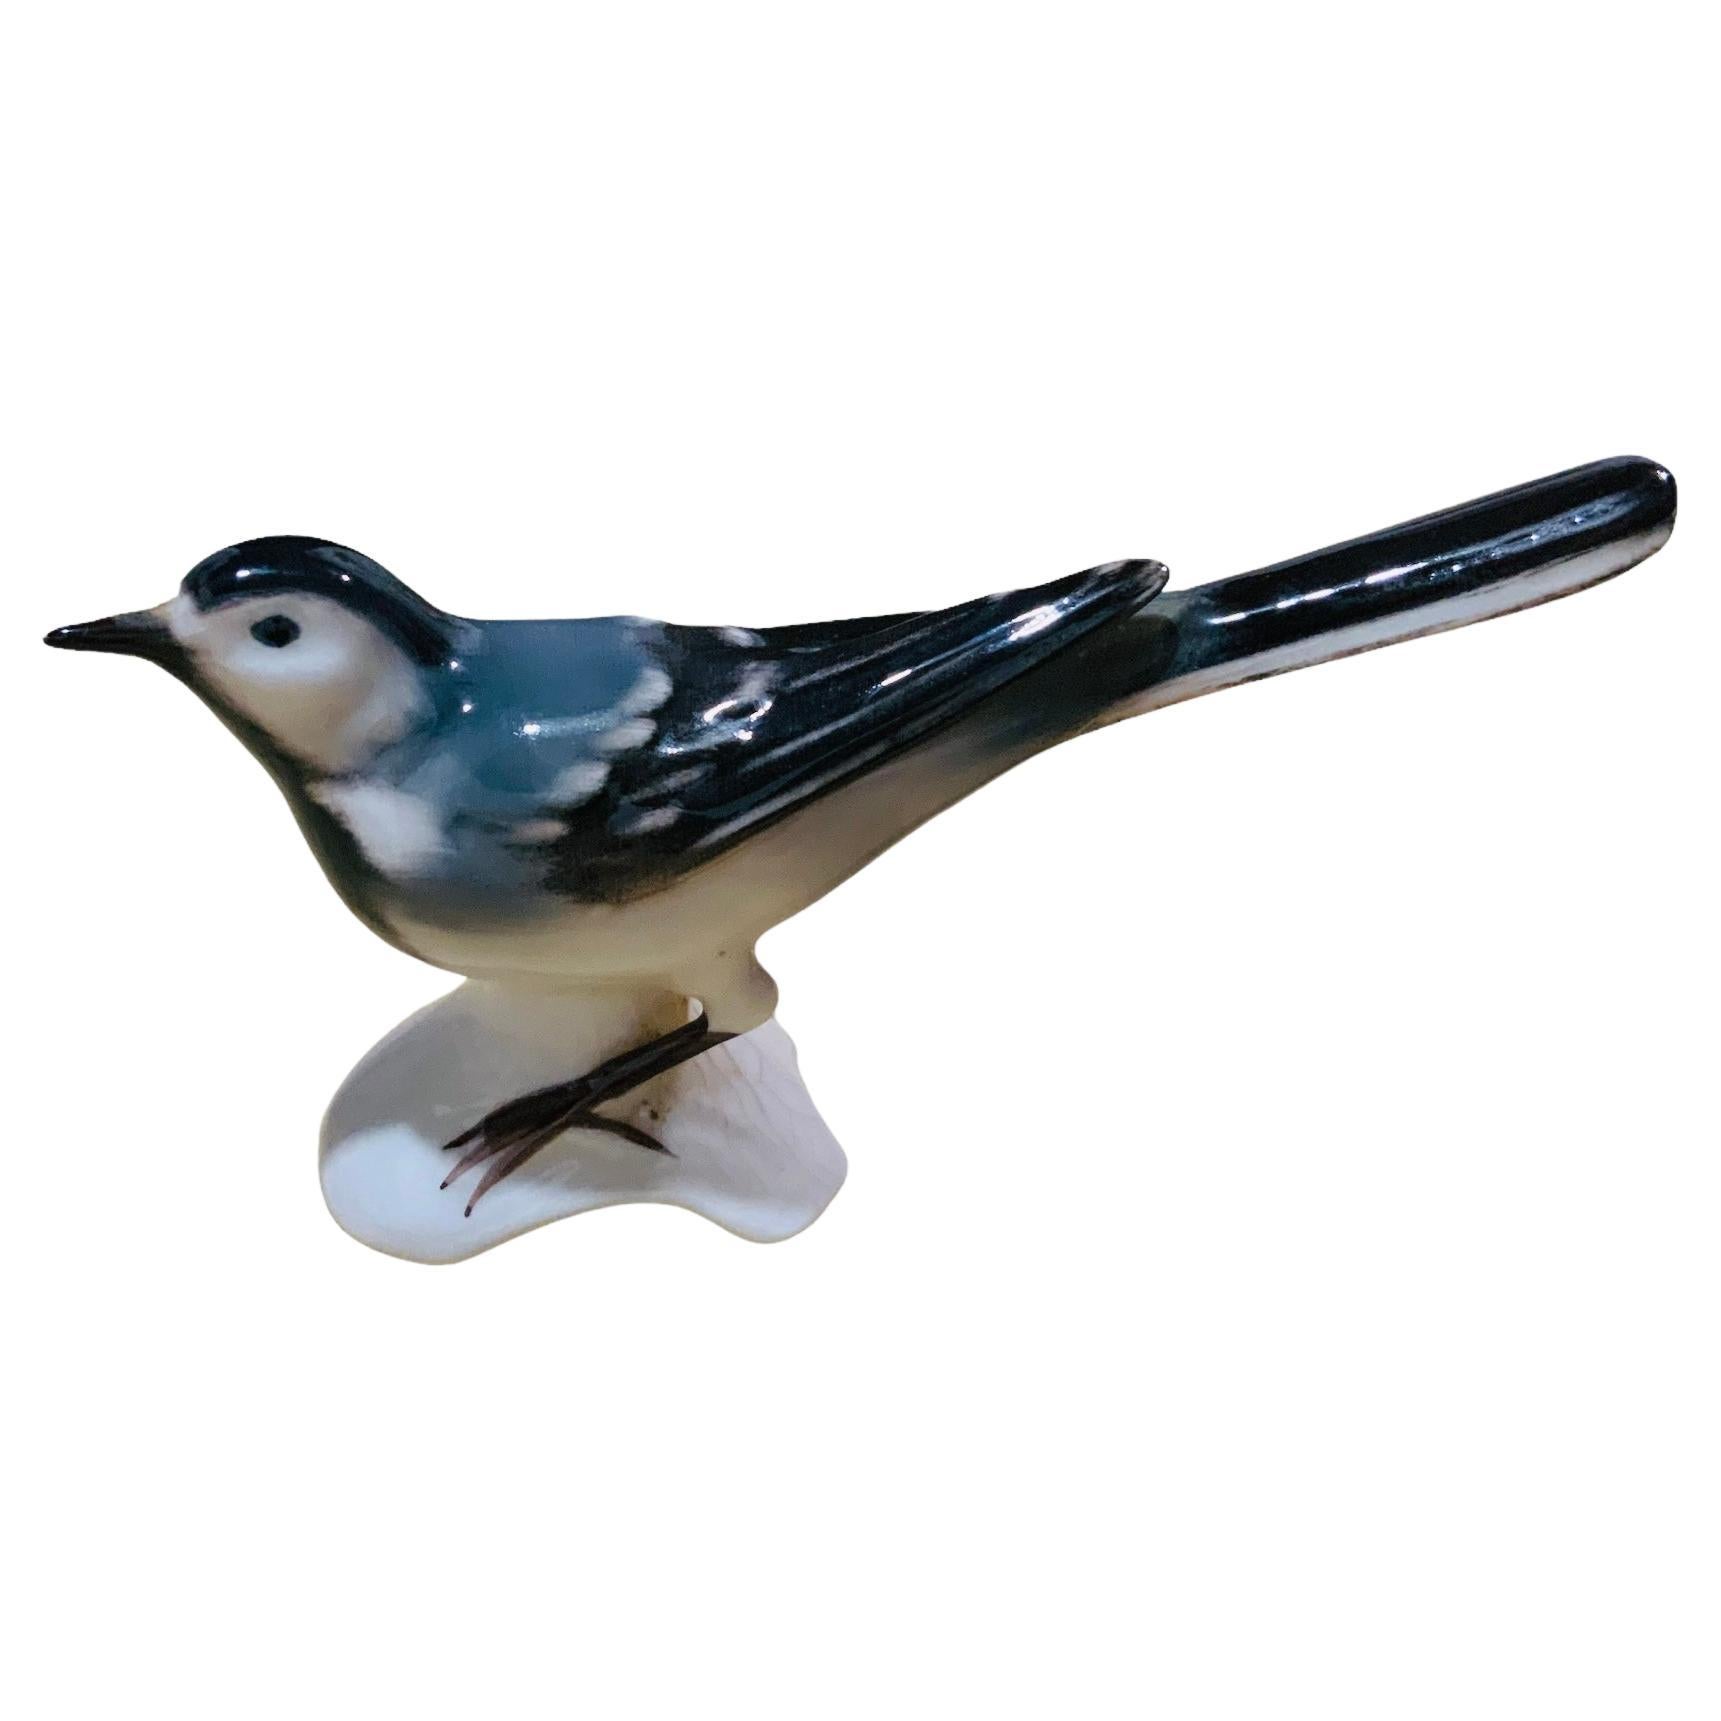 Goebel Porzellan Hand gemalt Vogel Figur einer Bachstelze